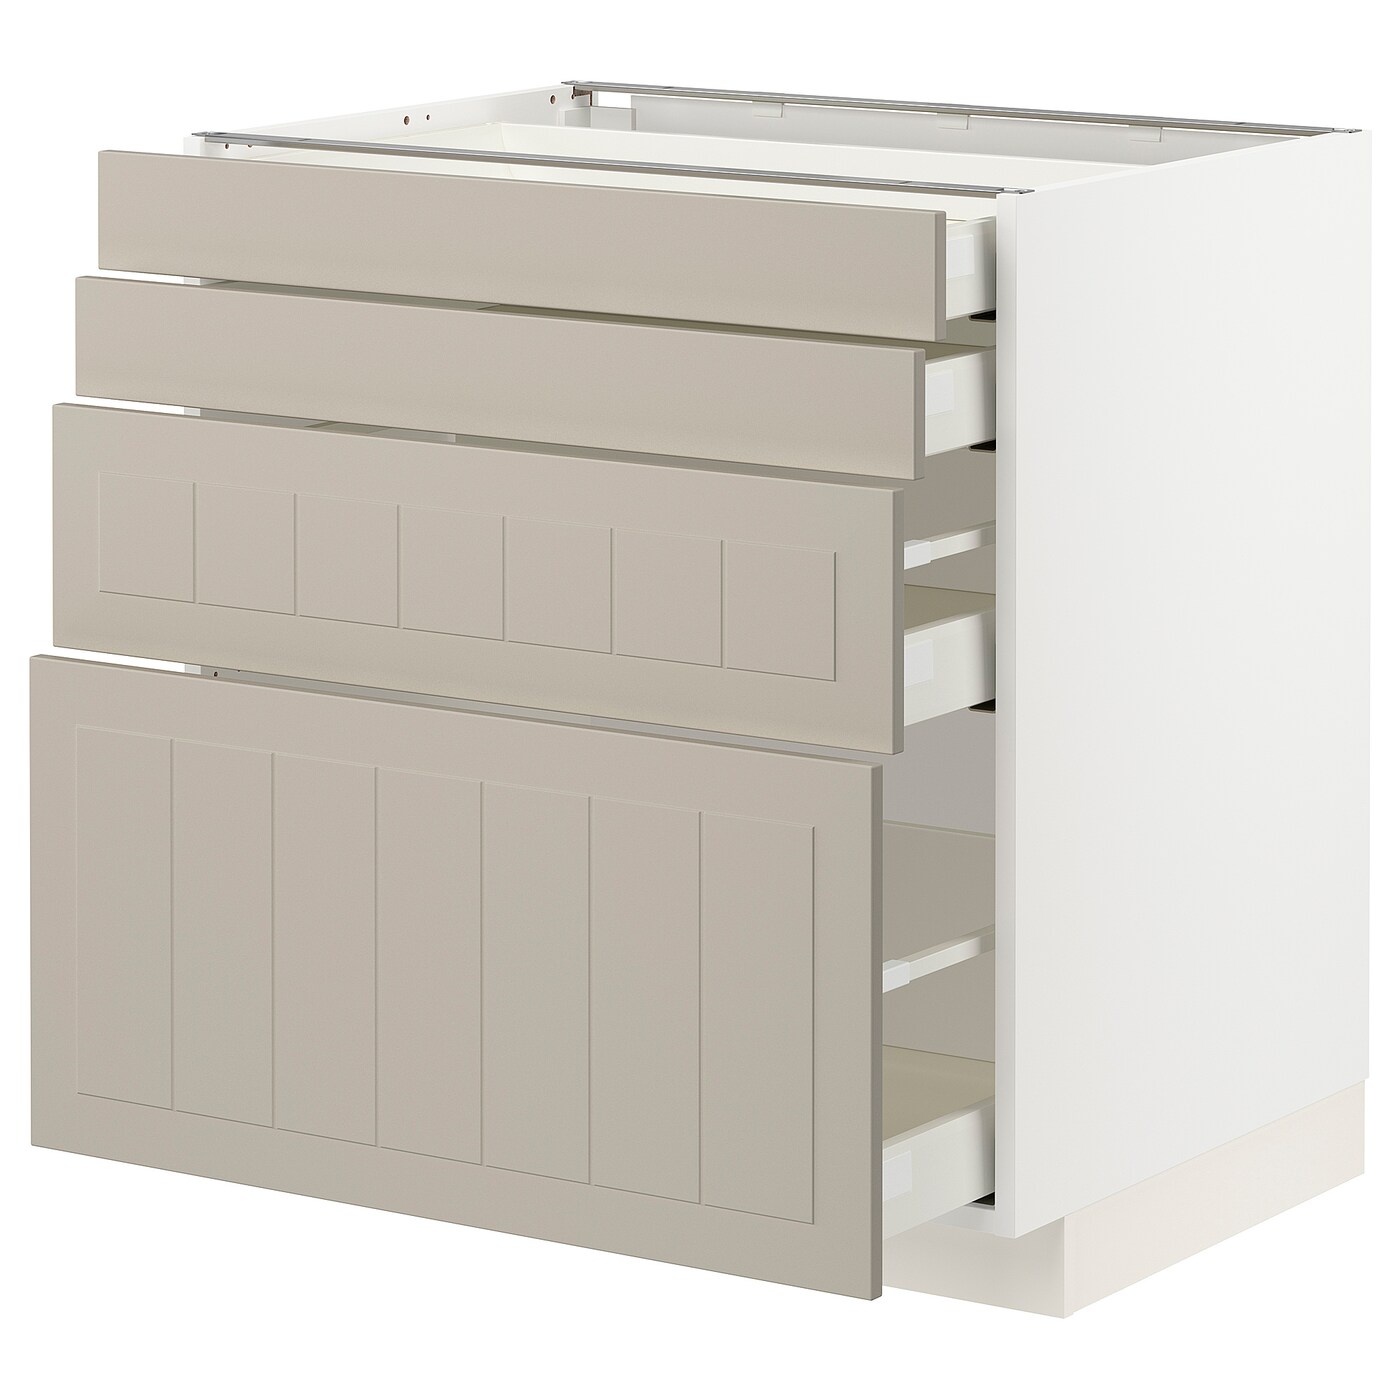 Напольный кухонный шкаф  - IKEA METOD MAXIMERA, 88x61,9x80см, белый/бежевый, МЕТОД МАКСИМЕРА ИКЕА